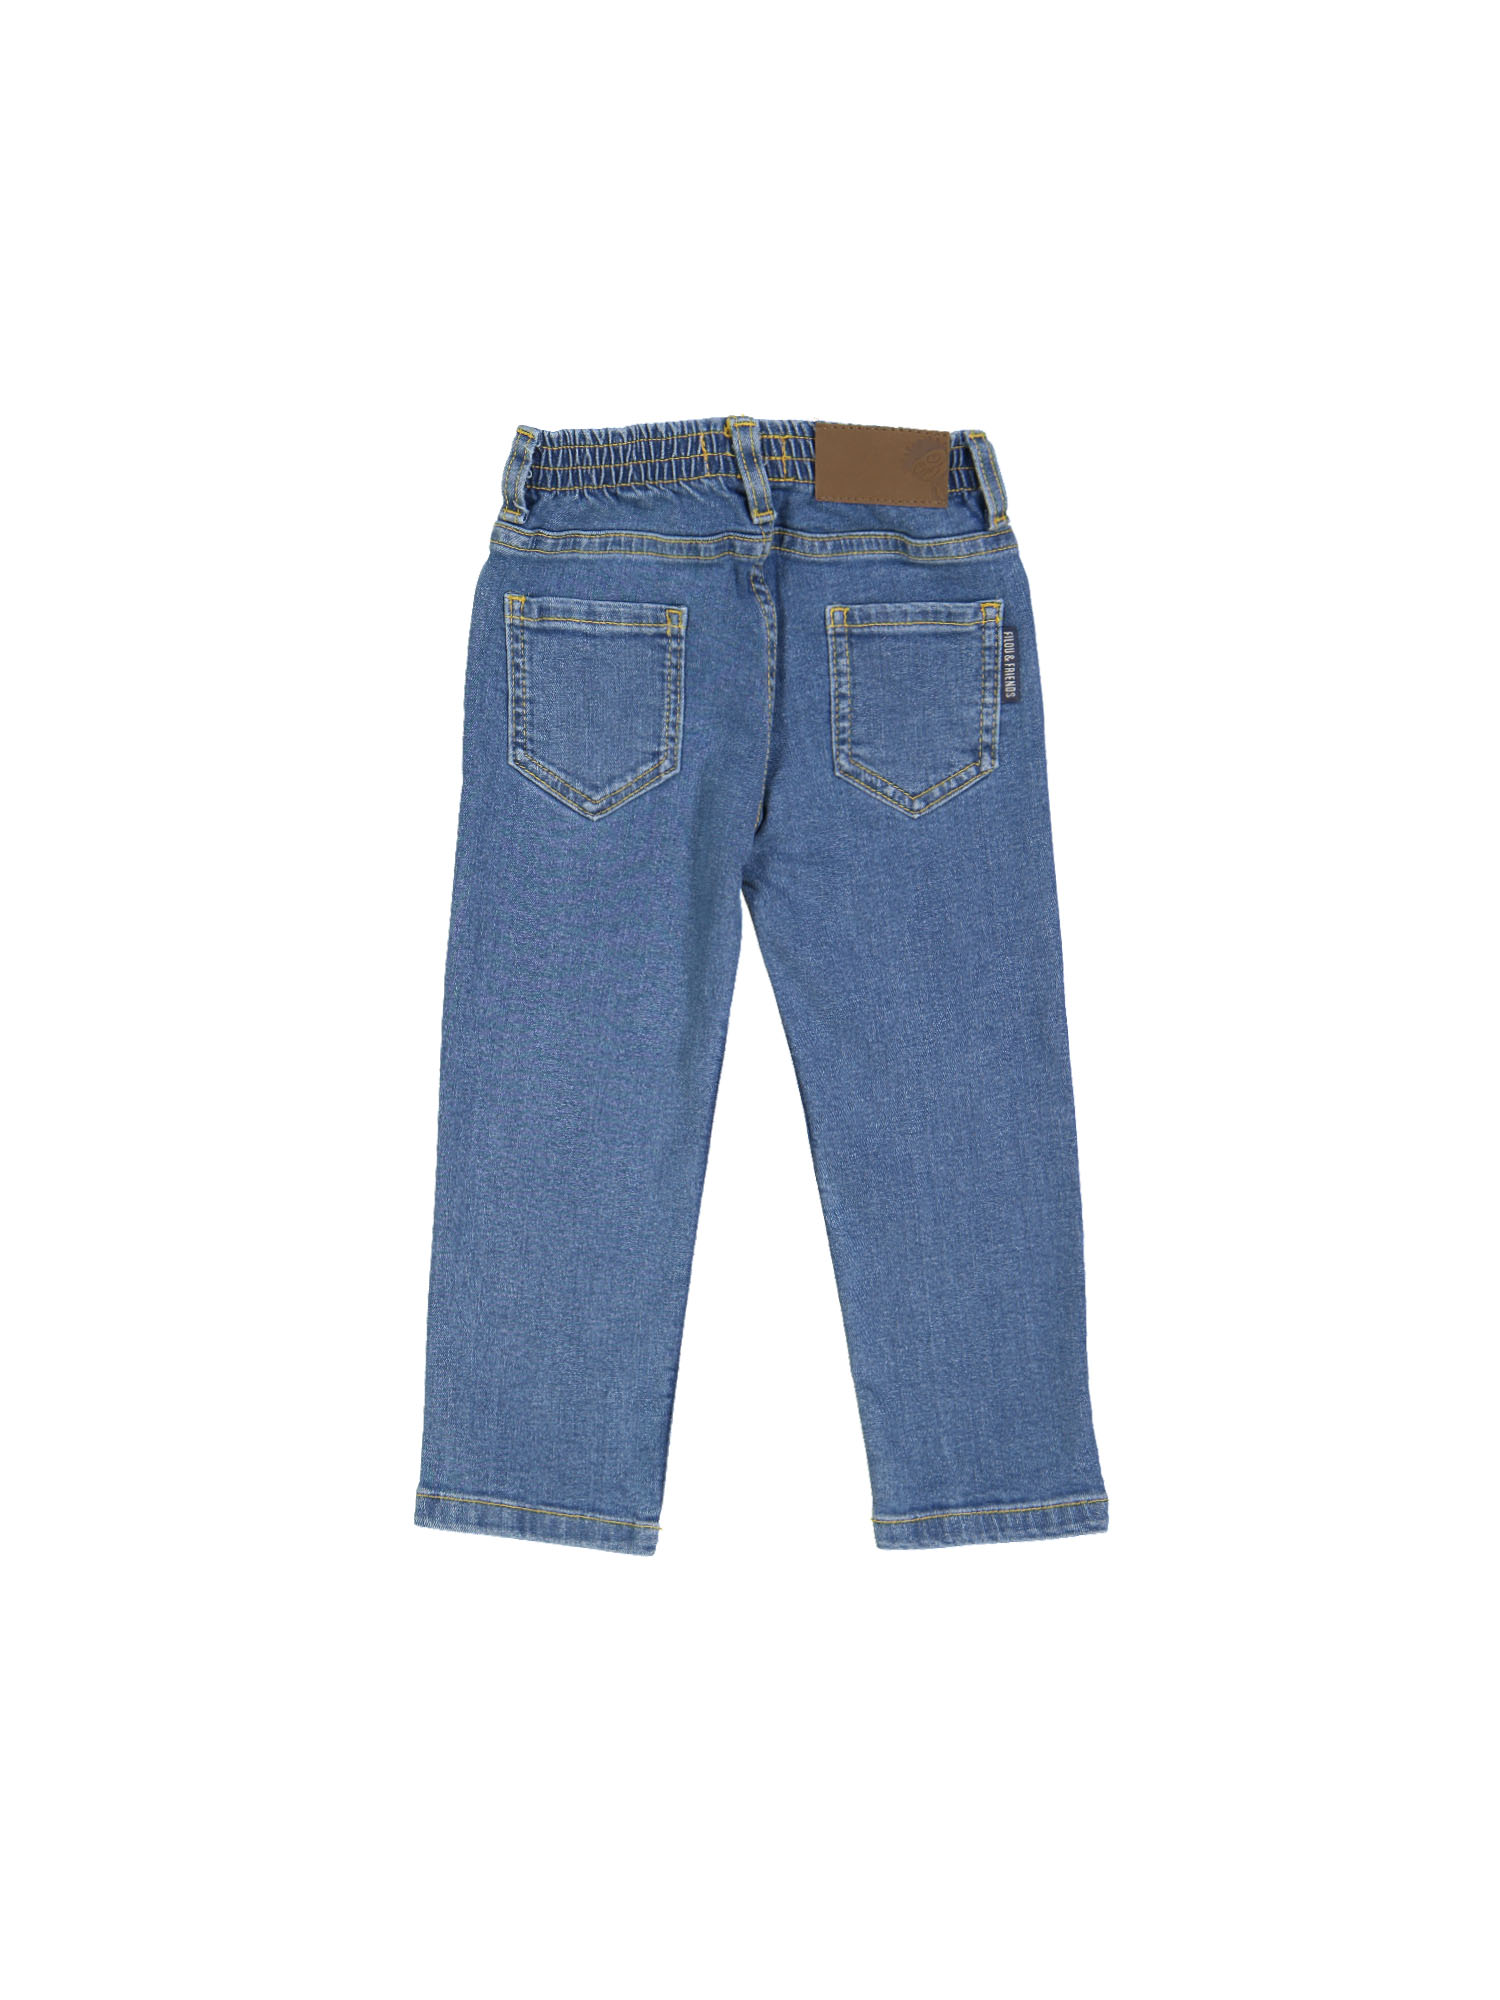 jeans regular bleach blauw rekker 10j